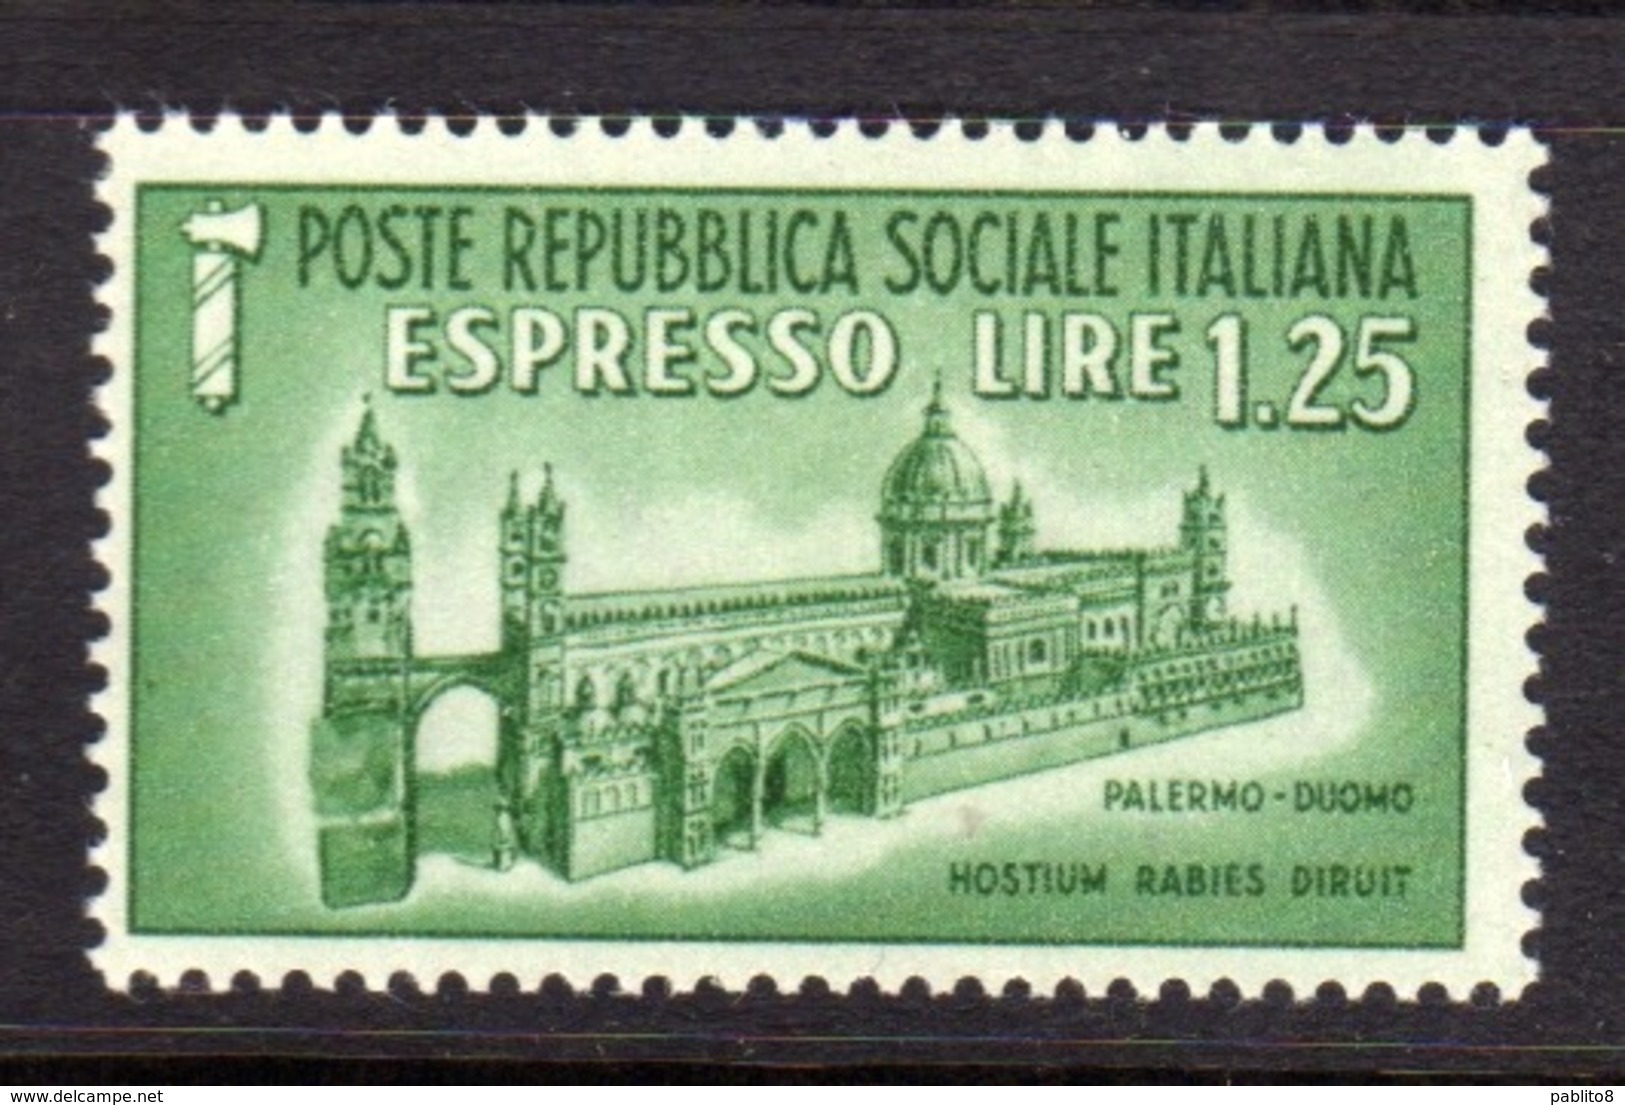 ITALIA REGNO ITALY KINGDOM REPUBBLICA SOCIALE RSI 1944 ESPRESSO SPECIAL DELIVERY RSI DUOMO DI PALERMO LIRE 1,25 MNH - Express Mail